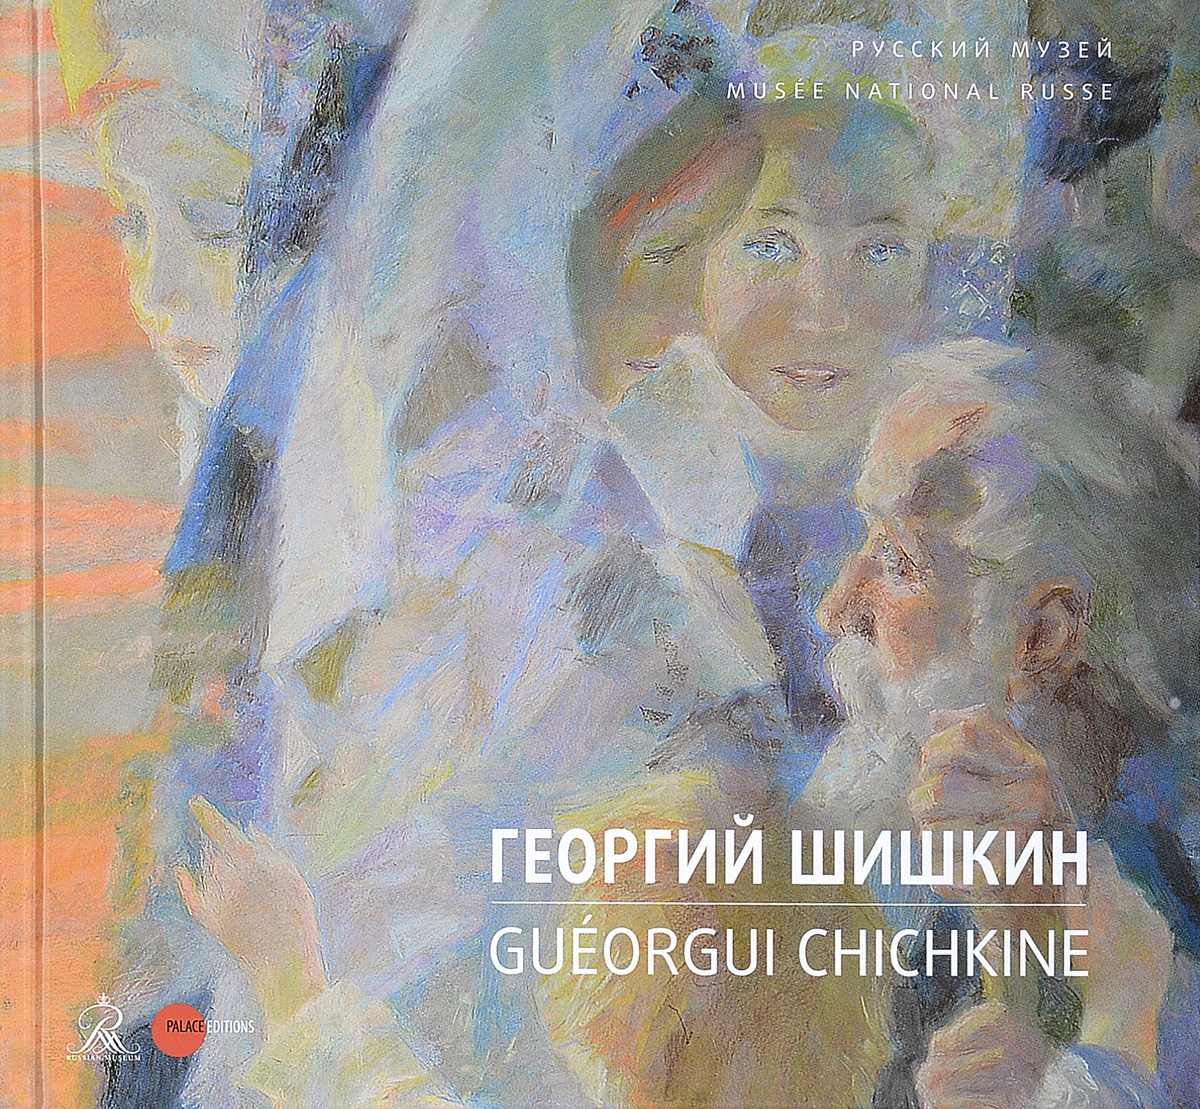 Георгий Шишкин / Gueorgui Chichkine